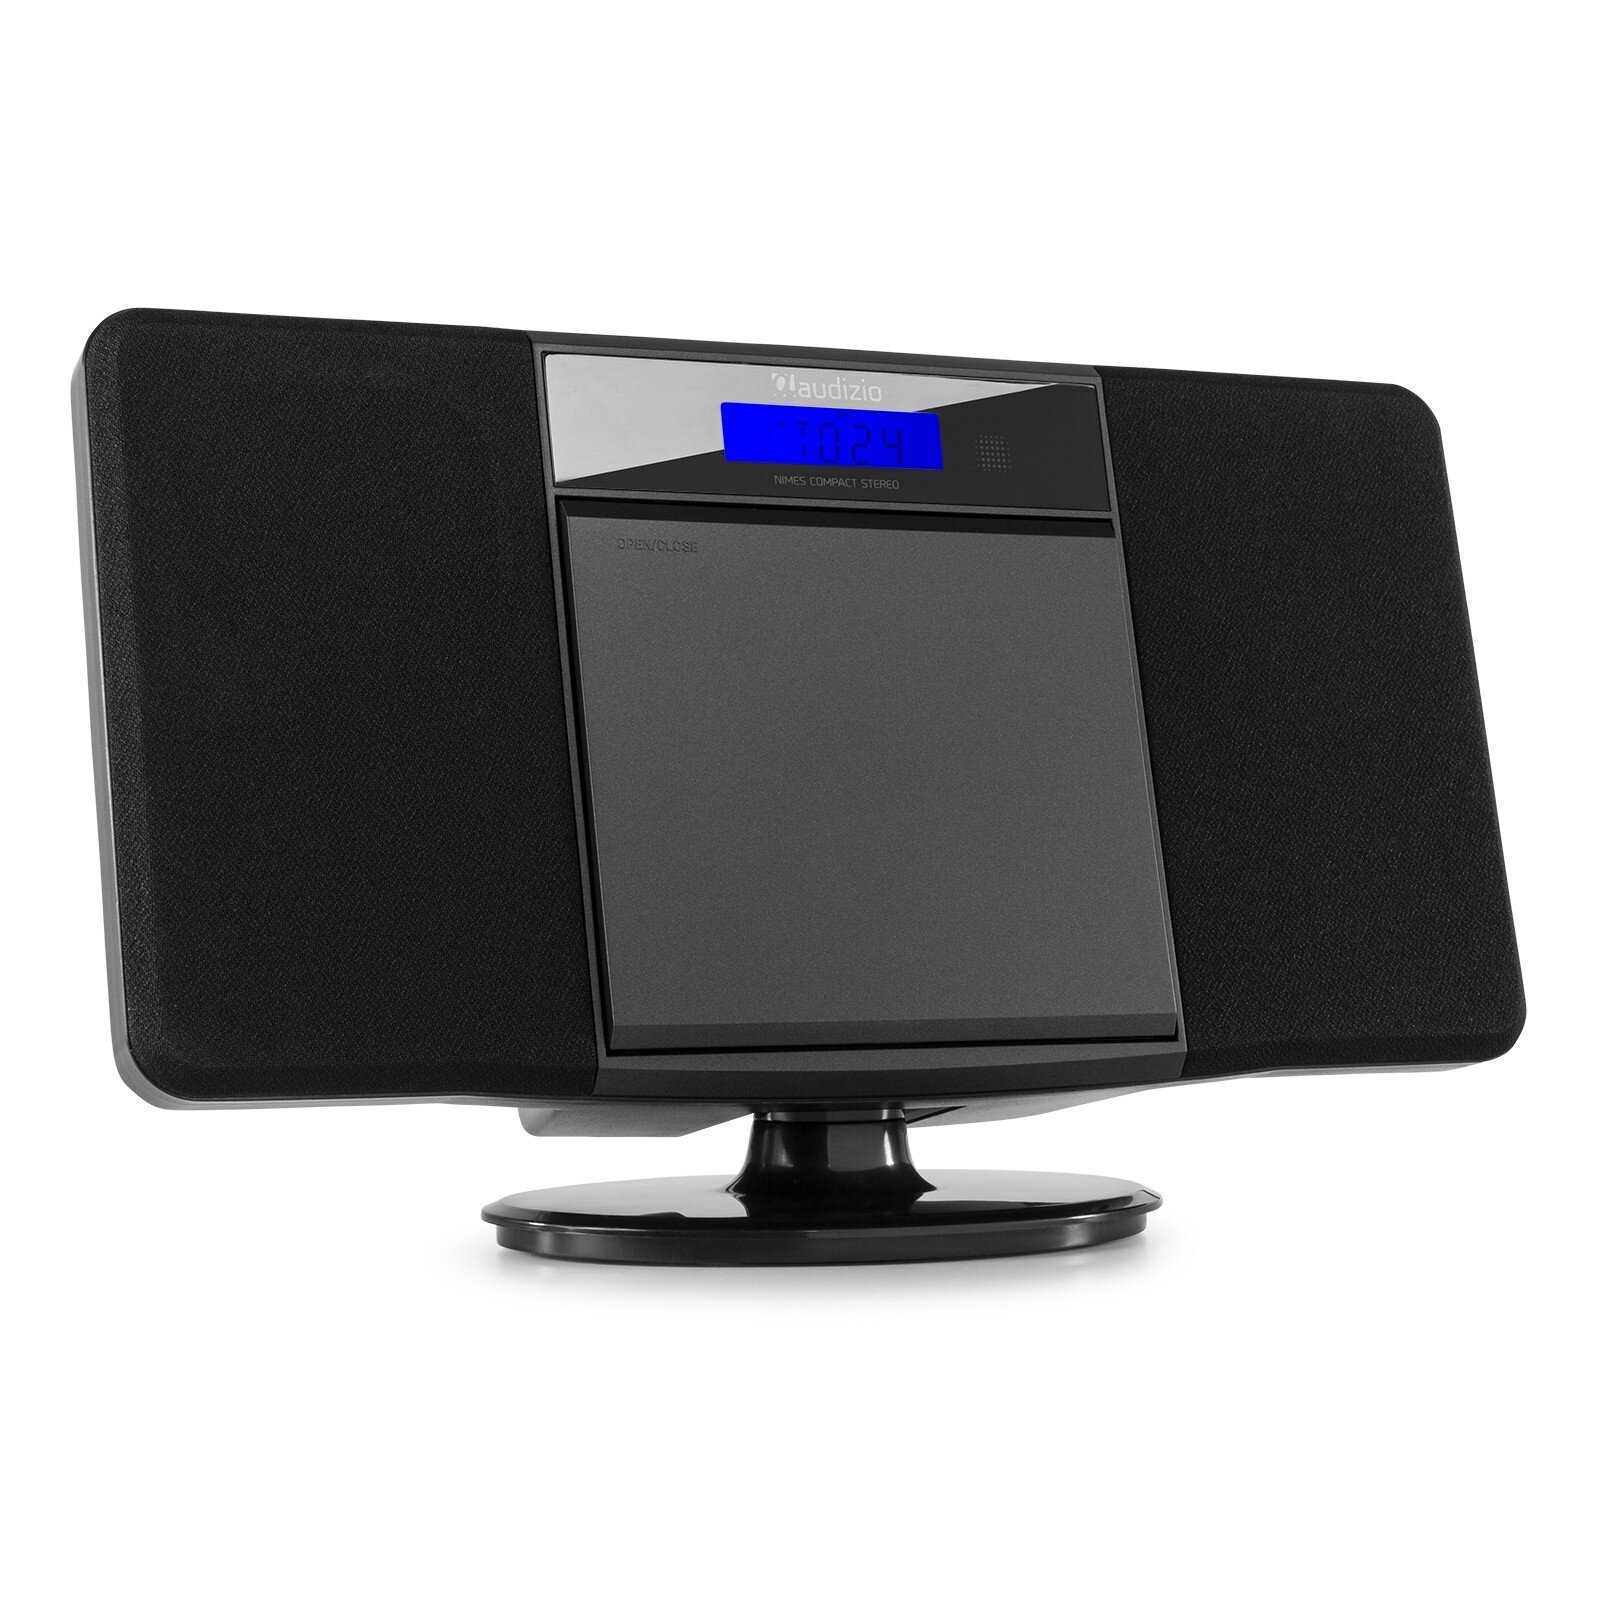 Audizio Nimes Bluetooth stereoset med CD-spelare, USB mp3-spelare och radio - 50W - Svart